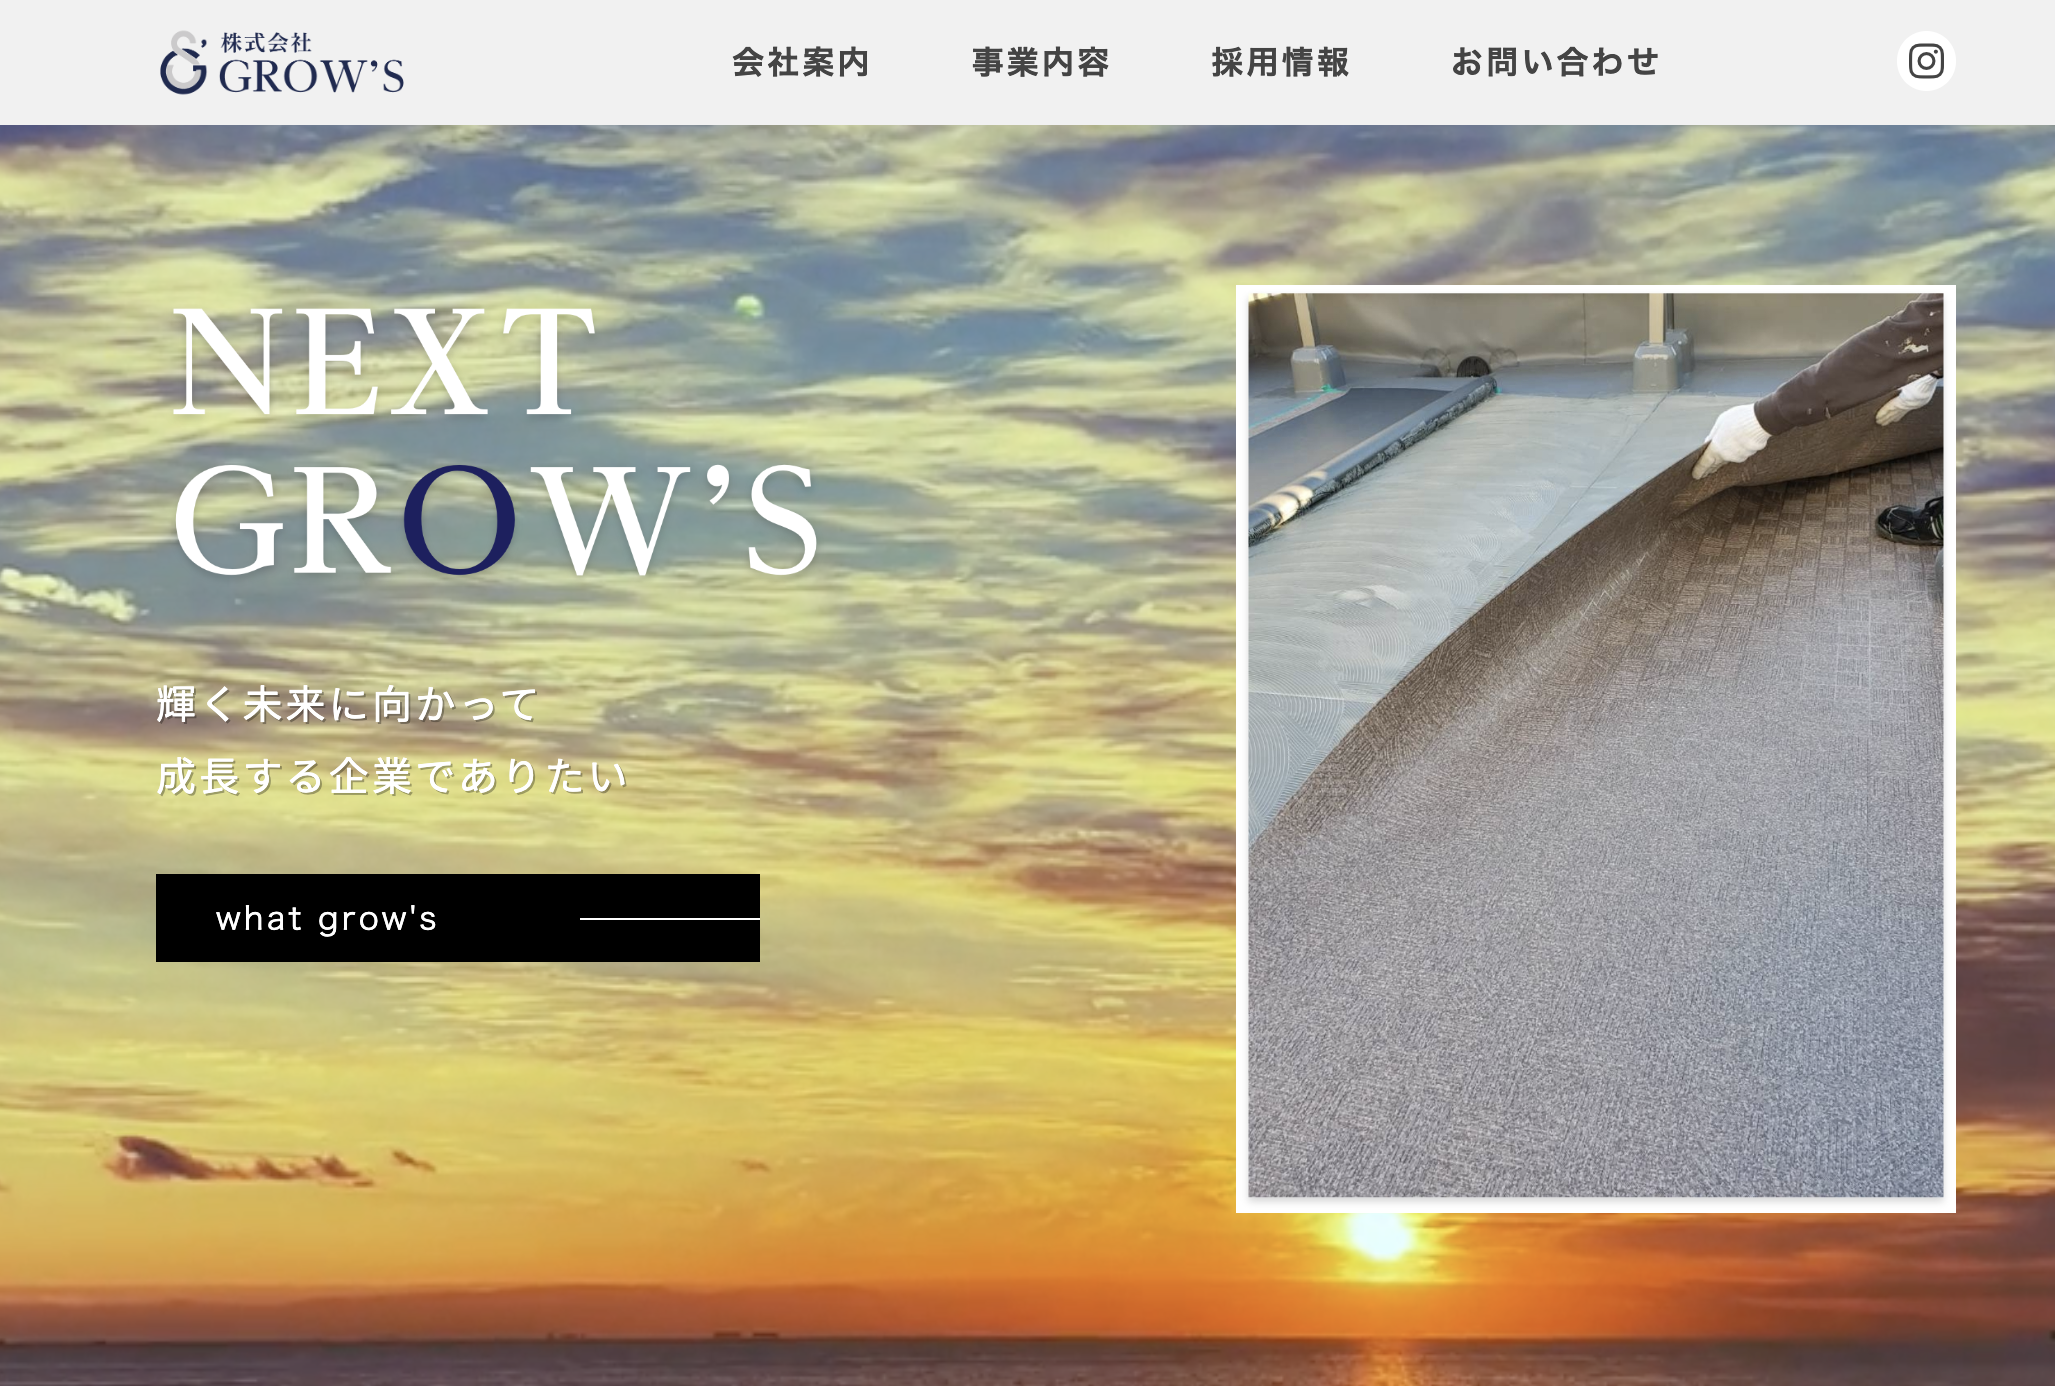 株式会社GROW’S様 公式サイト